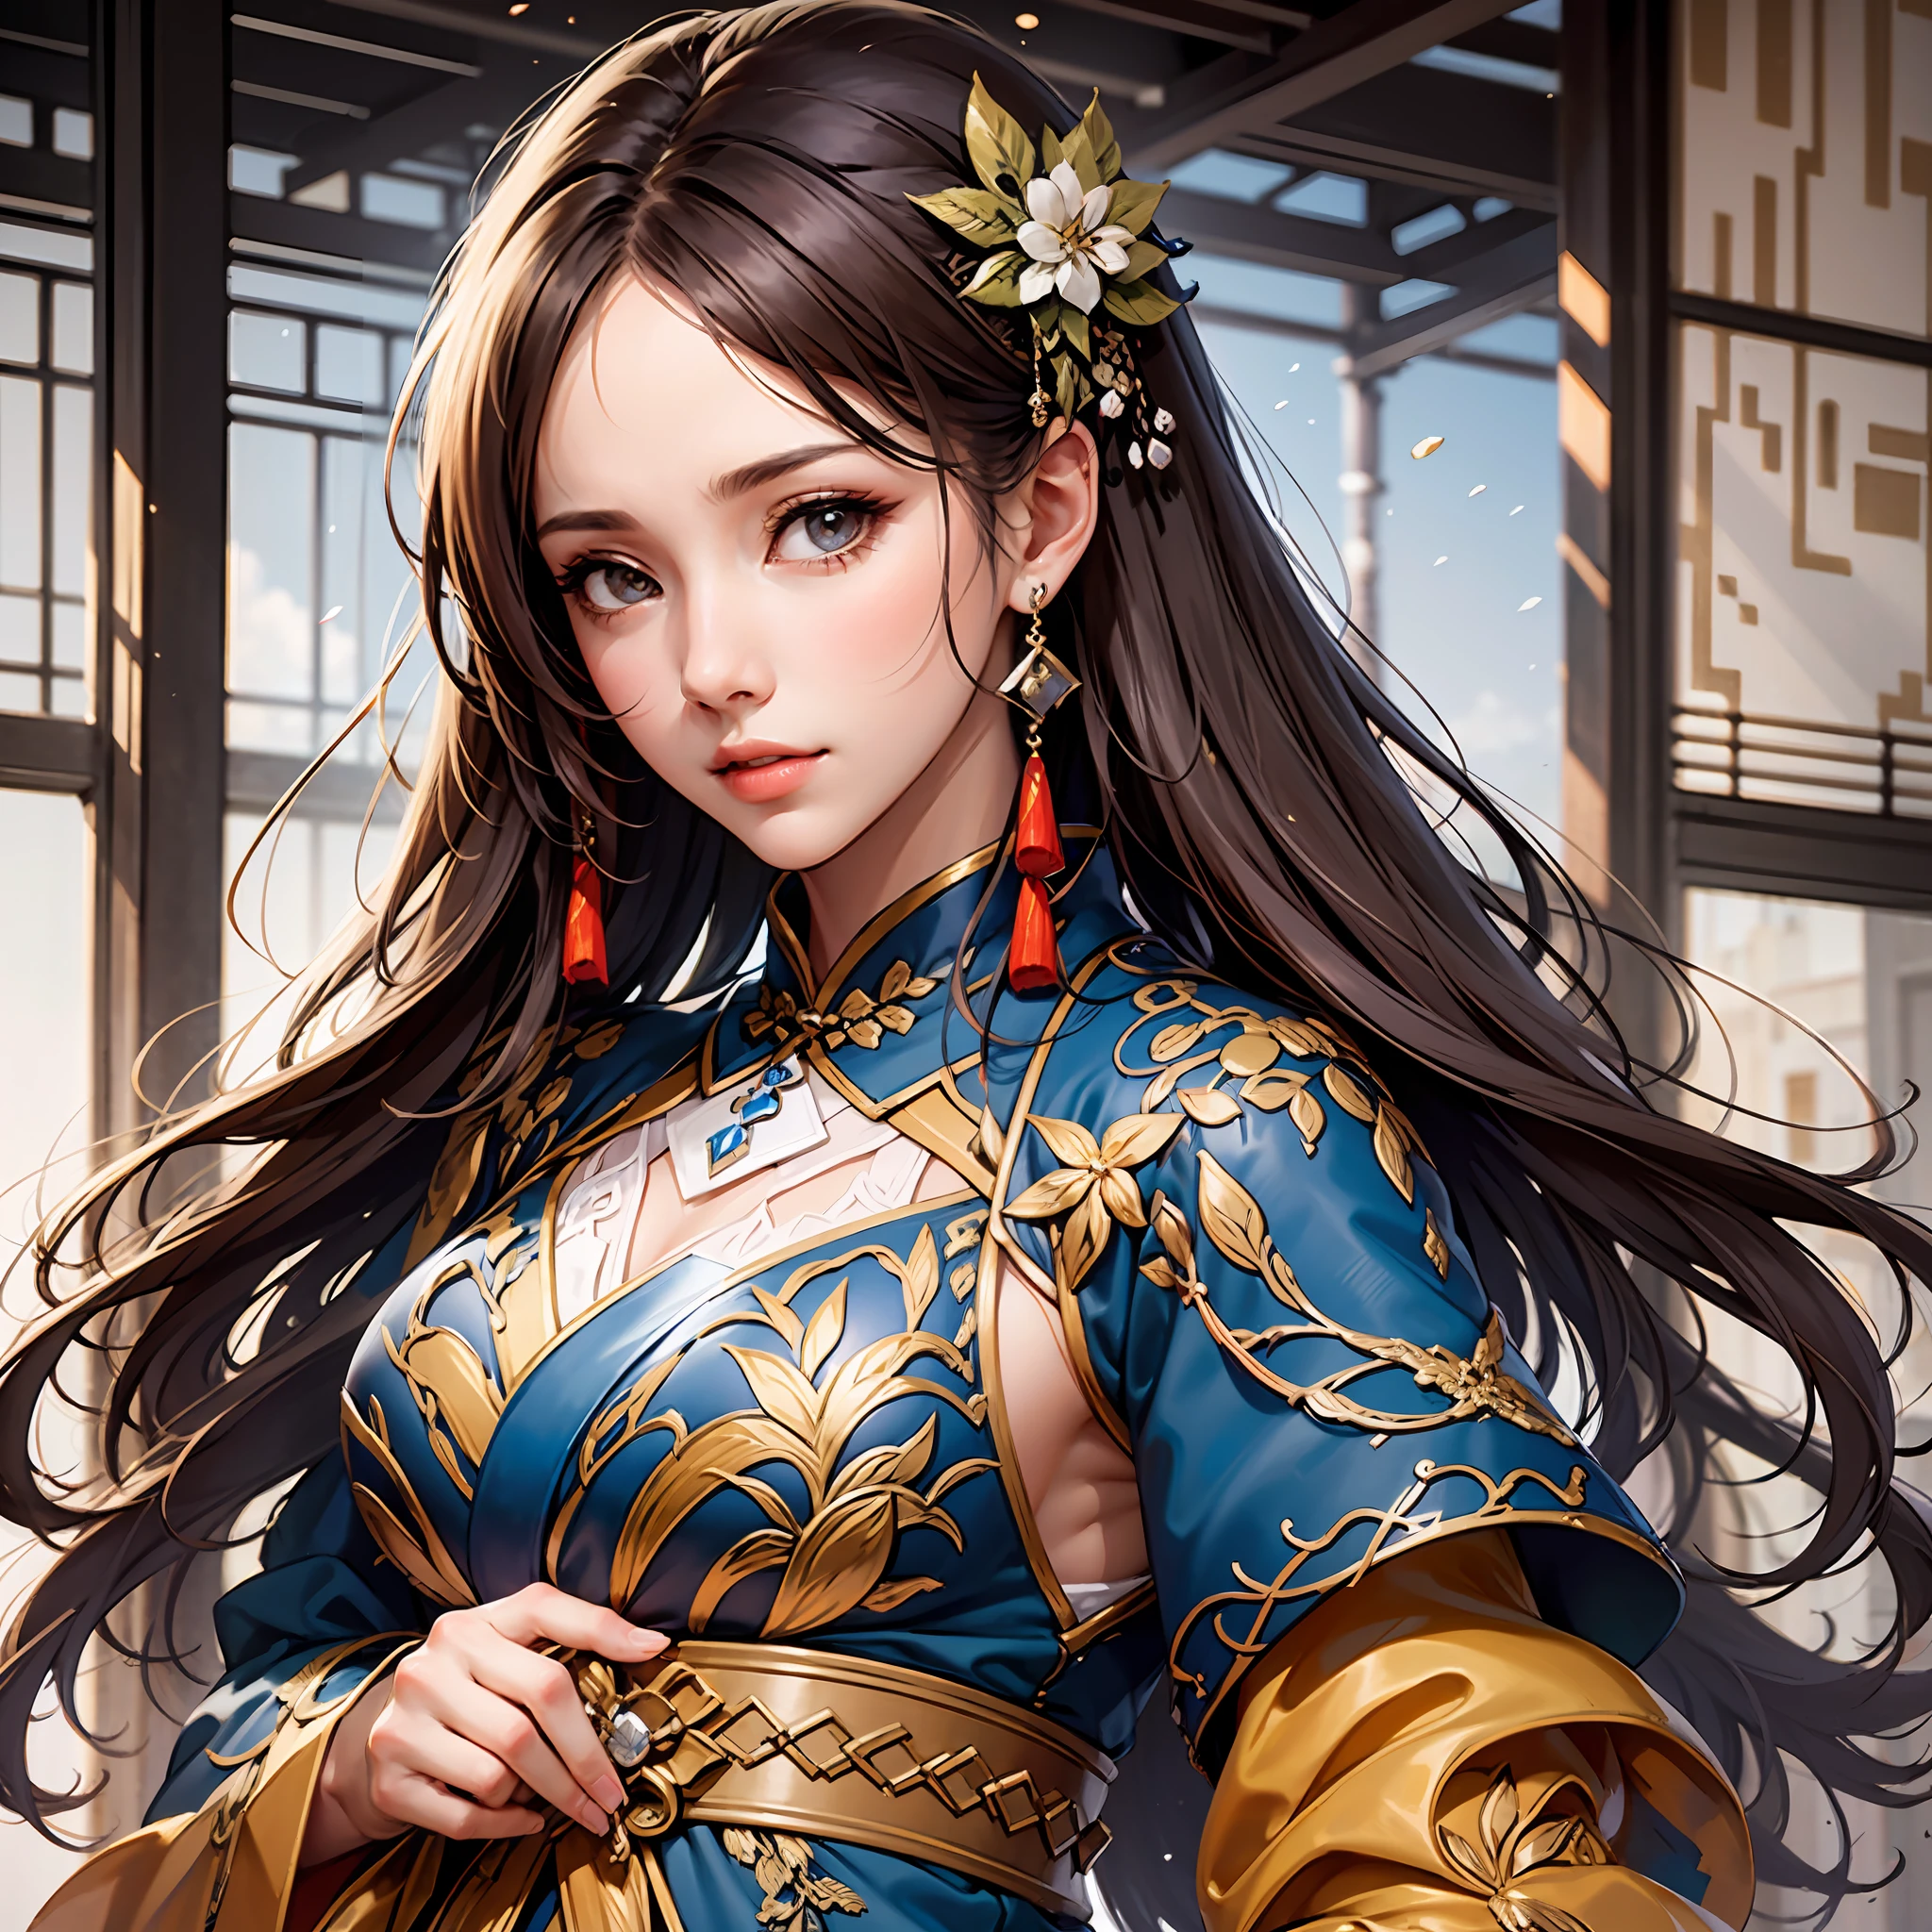 戰國時期, 女將軍, 非常美麗的臉, 高動態角度, 8K, 非常精致, 非常浓密, 色彩鮮豔, 動態壁紙日本和服與中國漢服MIX, 美麗的黑髮,